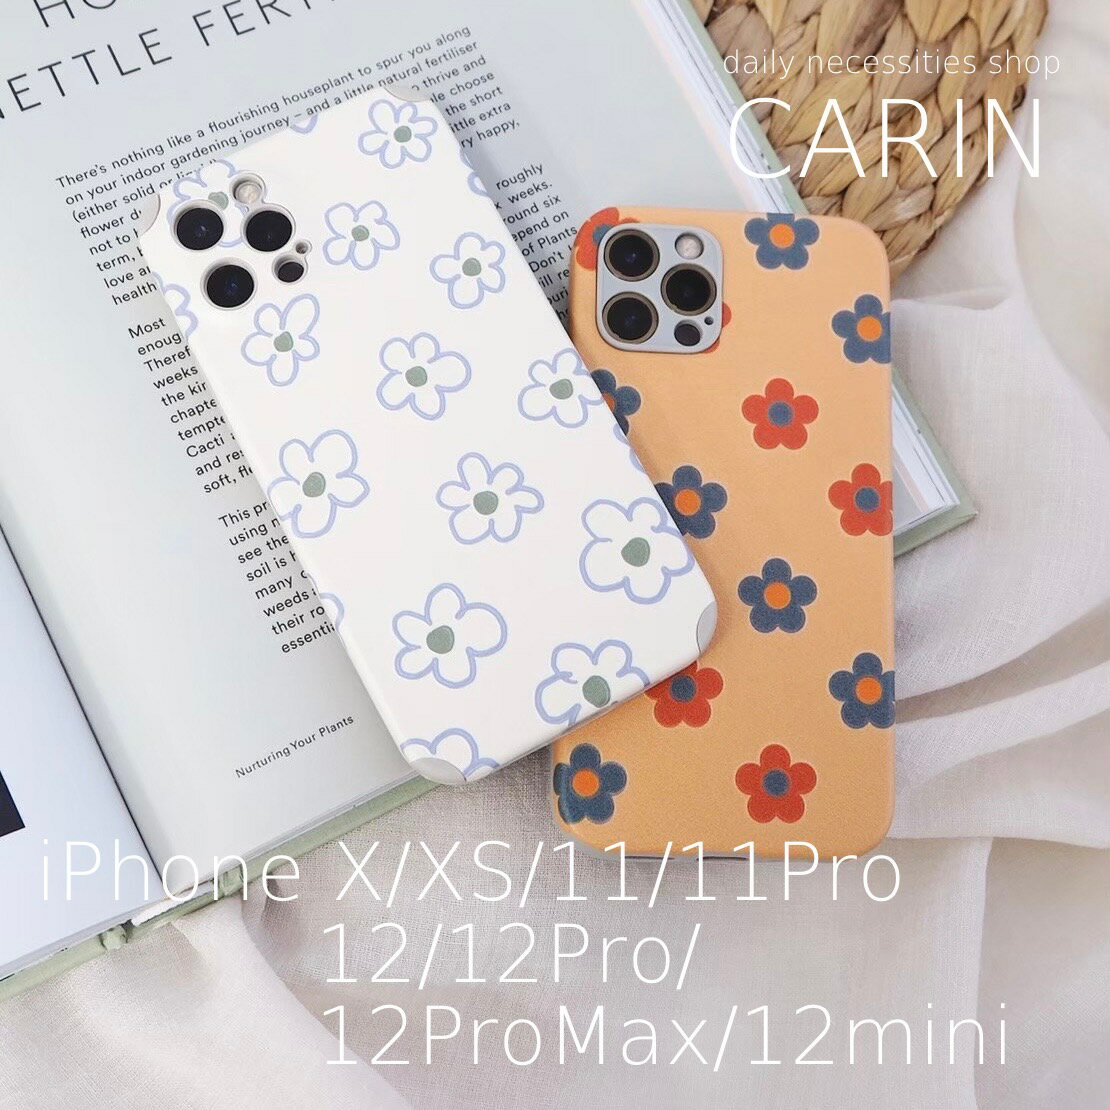 【送料無料】フラワーiPhoneケース iPhone ケース カバー X XS 11 Pro 12 Max mini アイフォン かわいい 花 フラワー 花柄 マット 韓国 インスタ映え オレンジ カラフル 白 ホワイト 可愛い おしゃれ 手書き風